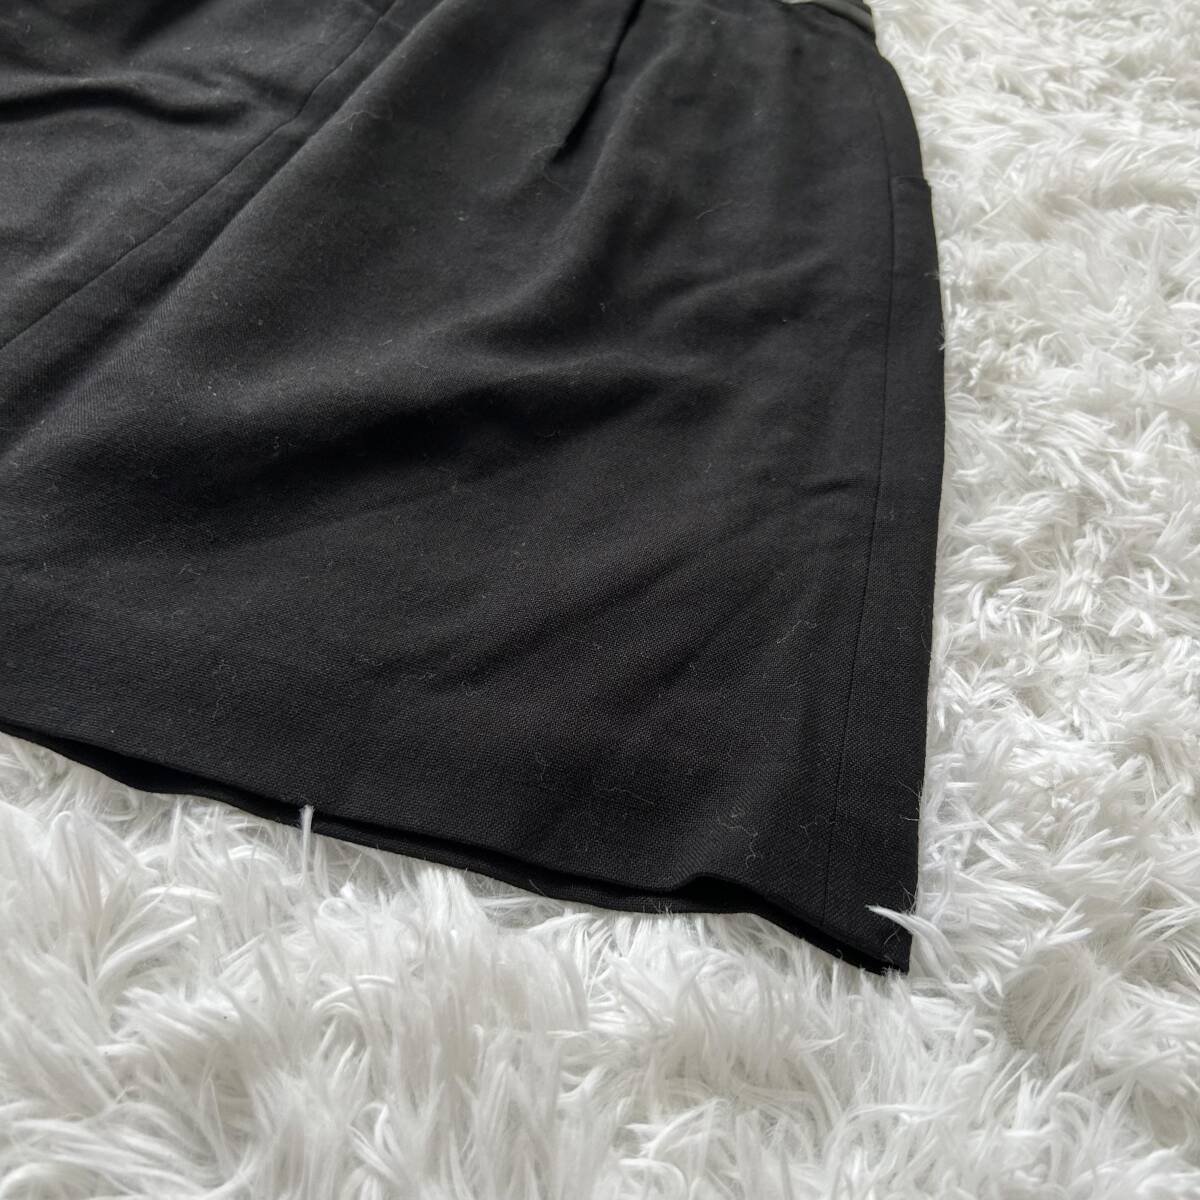 ロペ ROPE 膝丈スカート ブラック 黒 ウール混 日本製 お色 黒 コーデ タンクトップ カーディガン メリハリ ×2227_画像8